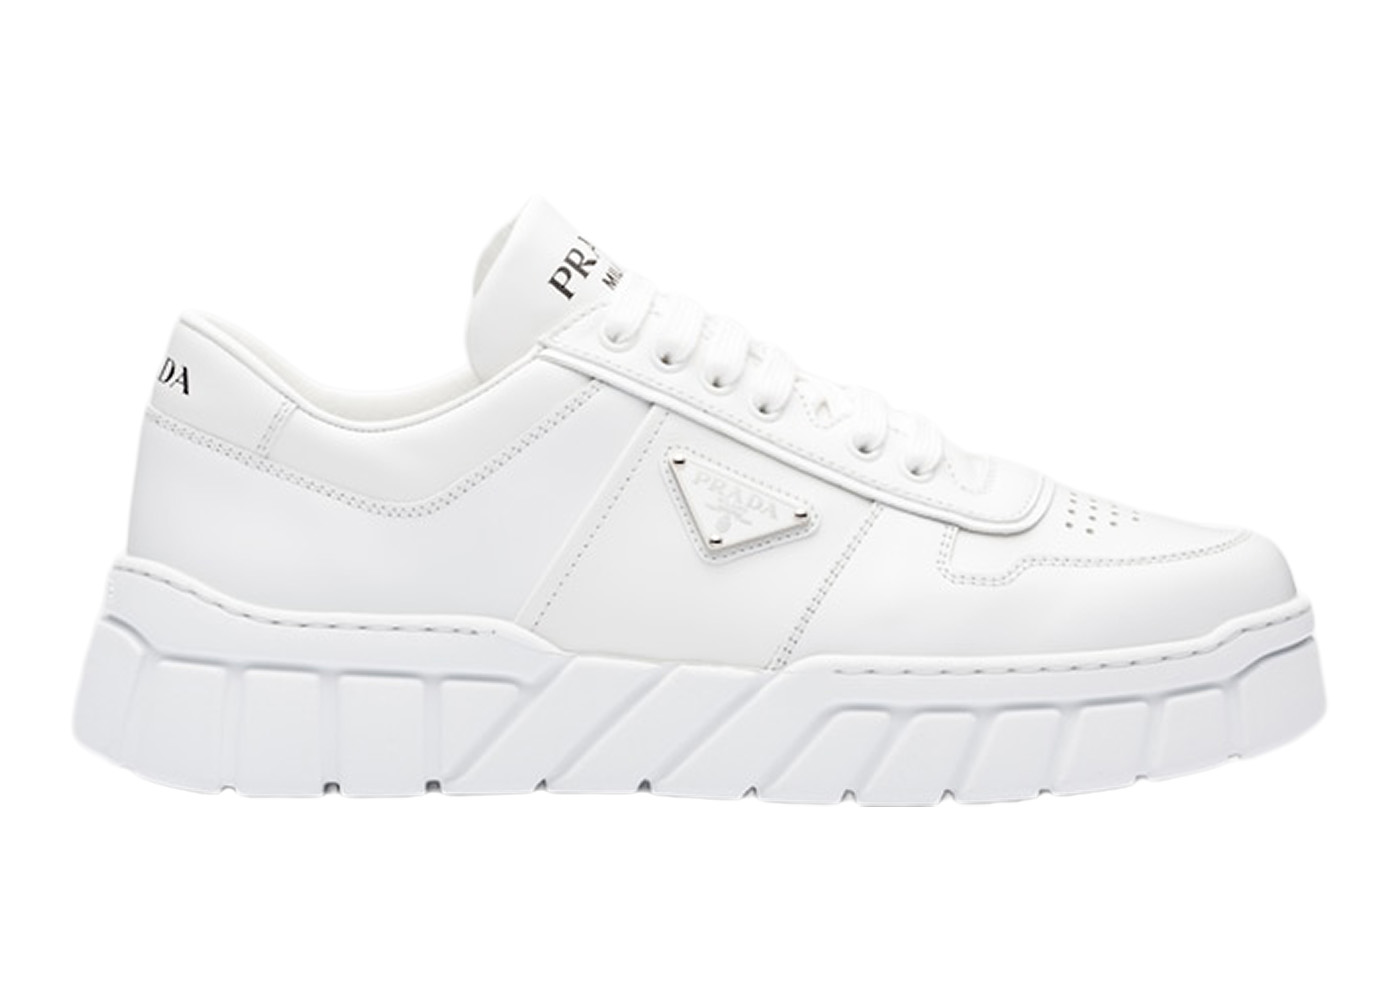 Prada Voluminous Sneakers Leather White White